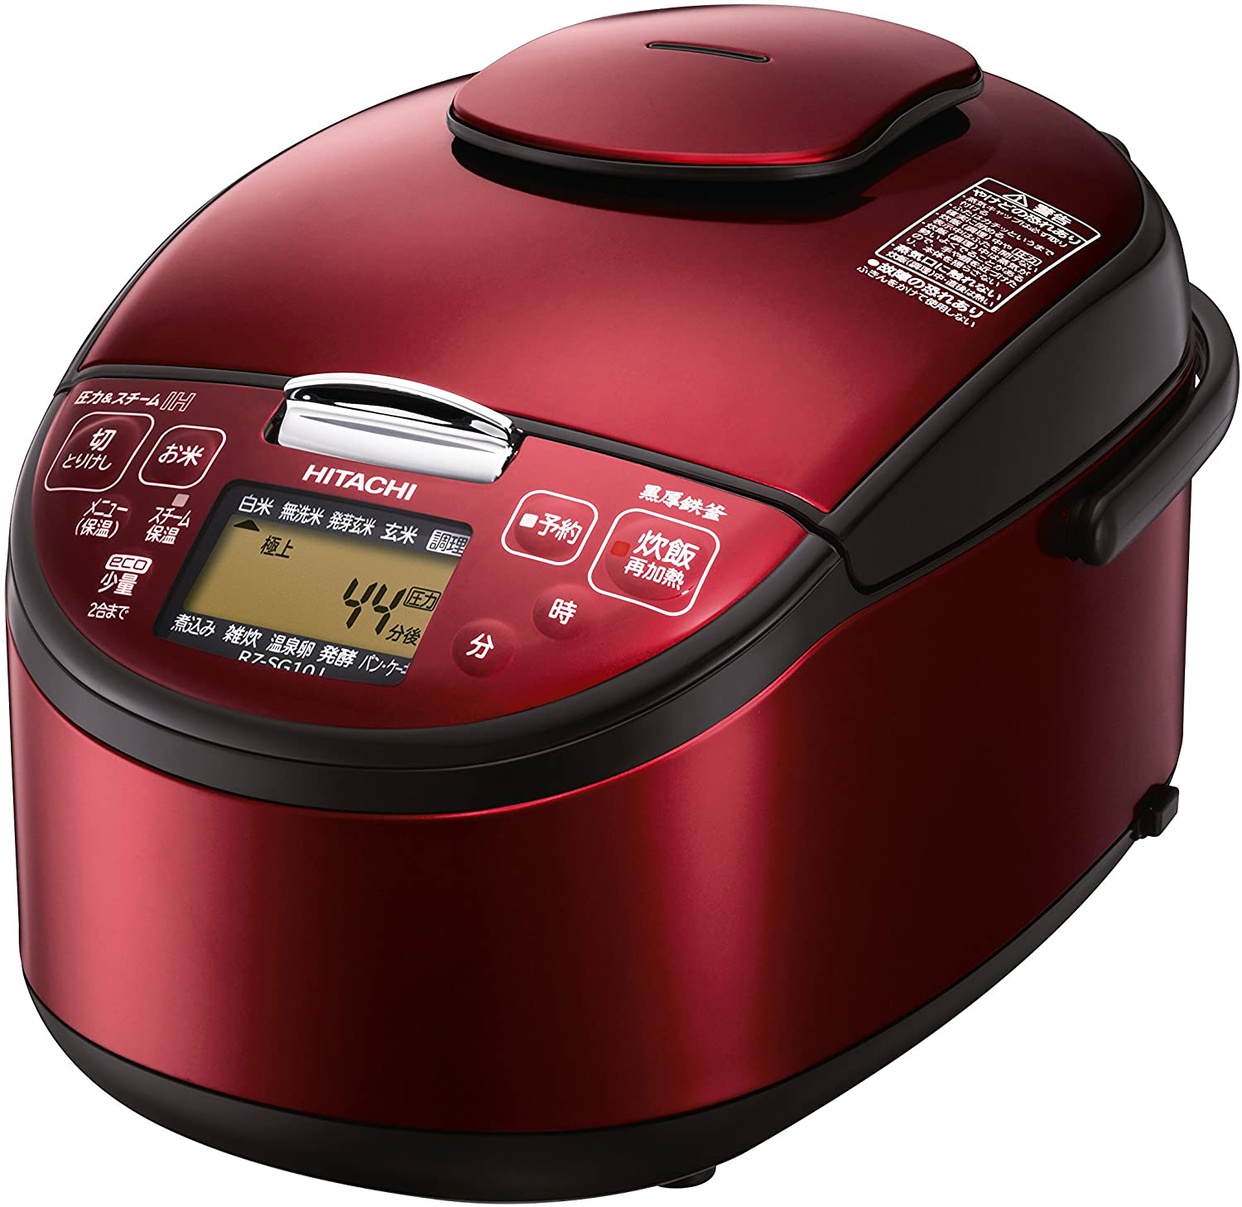 蒸気レス炊飯器おすすめ商品：日立(HITACHI) 圧力スチームIH炊飯器 RZ-SG10J